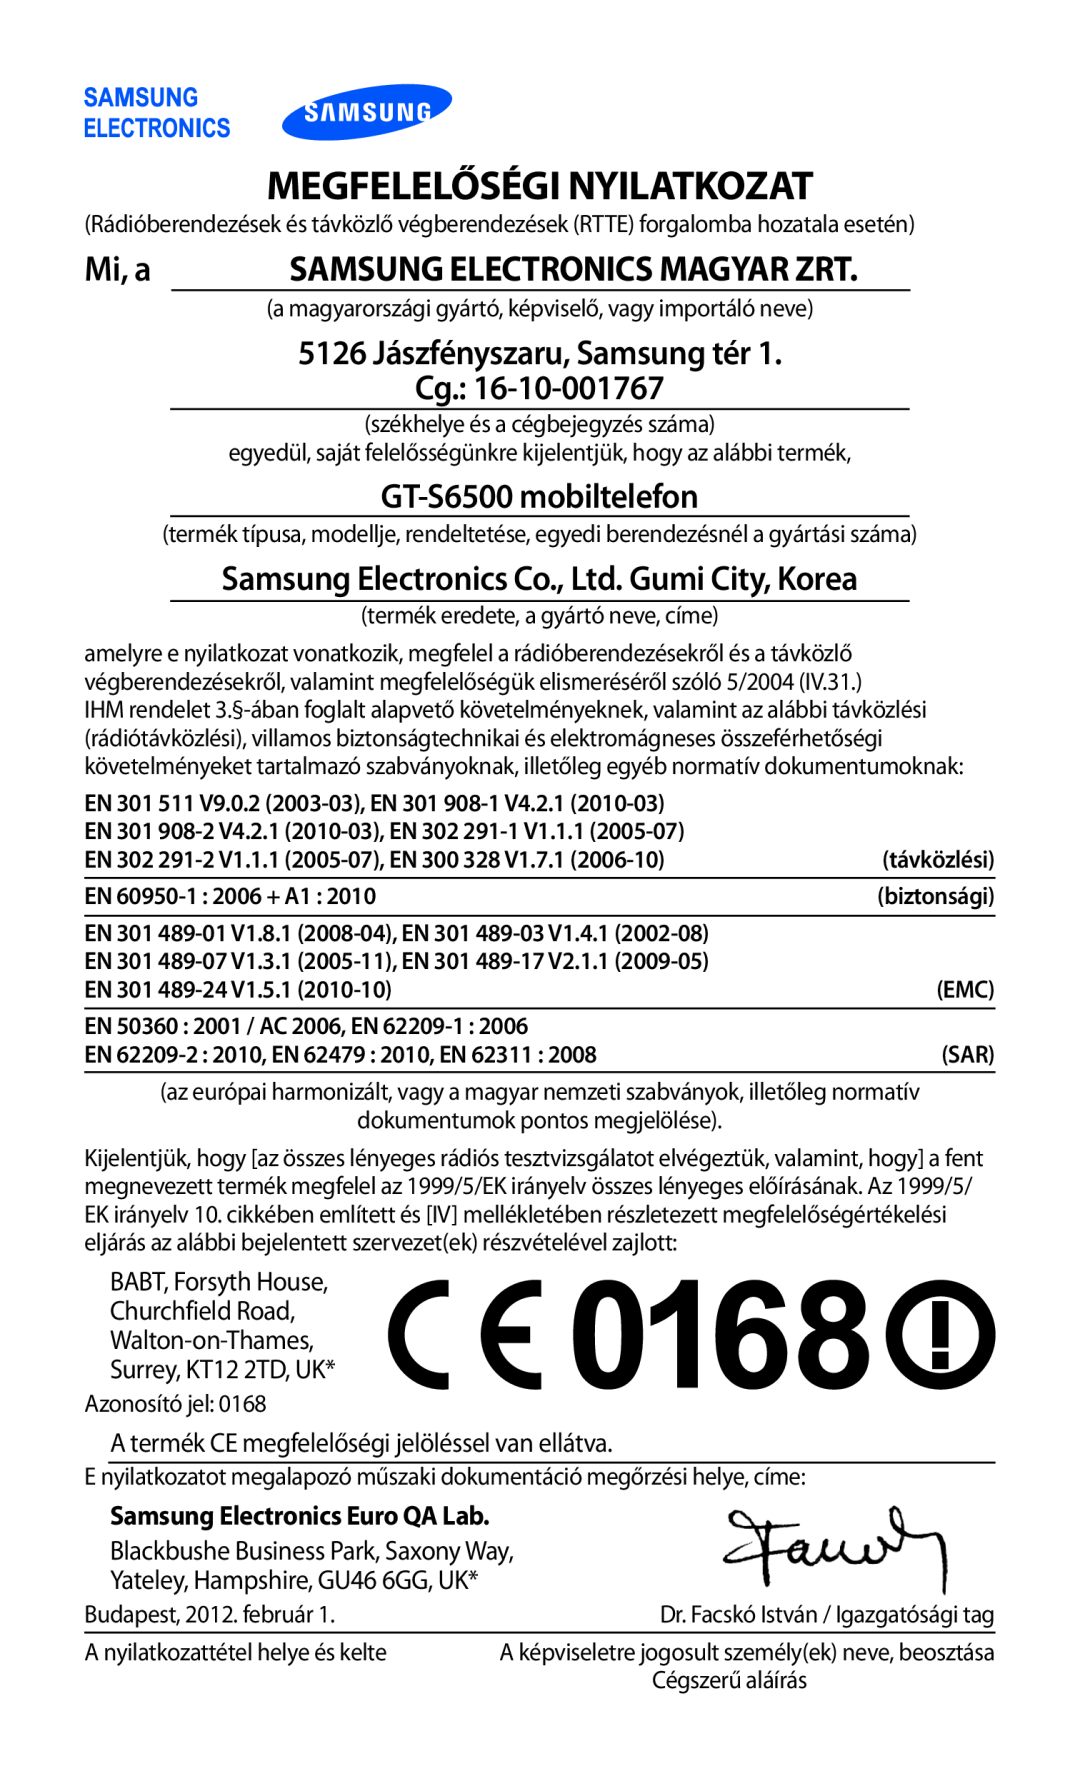 Samsung GT-S6500XKAO2C manual Megfelelőségi Nyilatkozat, Mi, a, GT-S6500 mobiltelefon, Samsung Electronics Magyar Zrt 